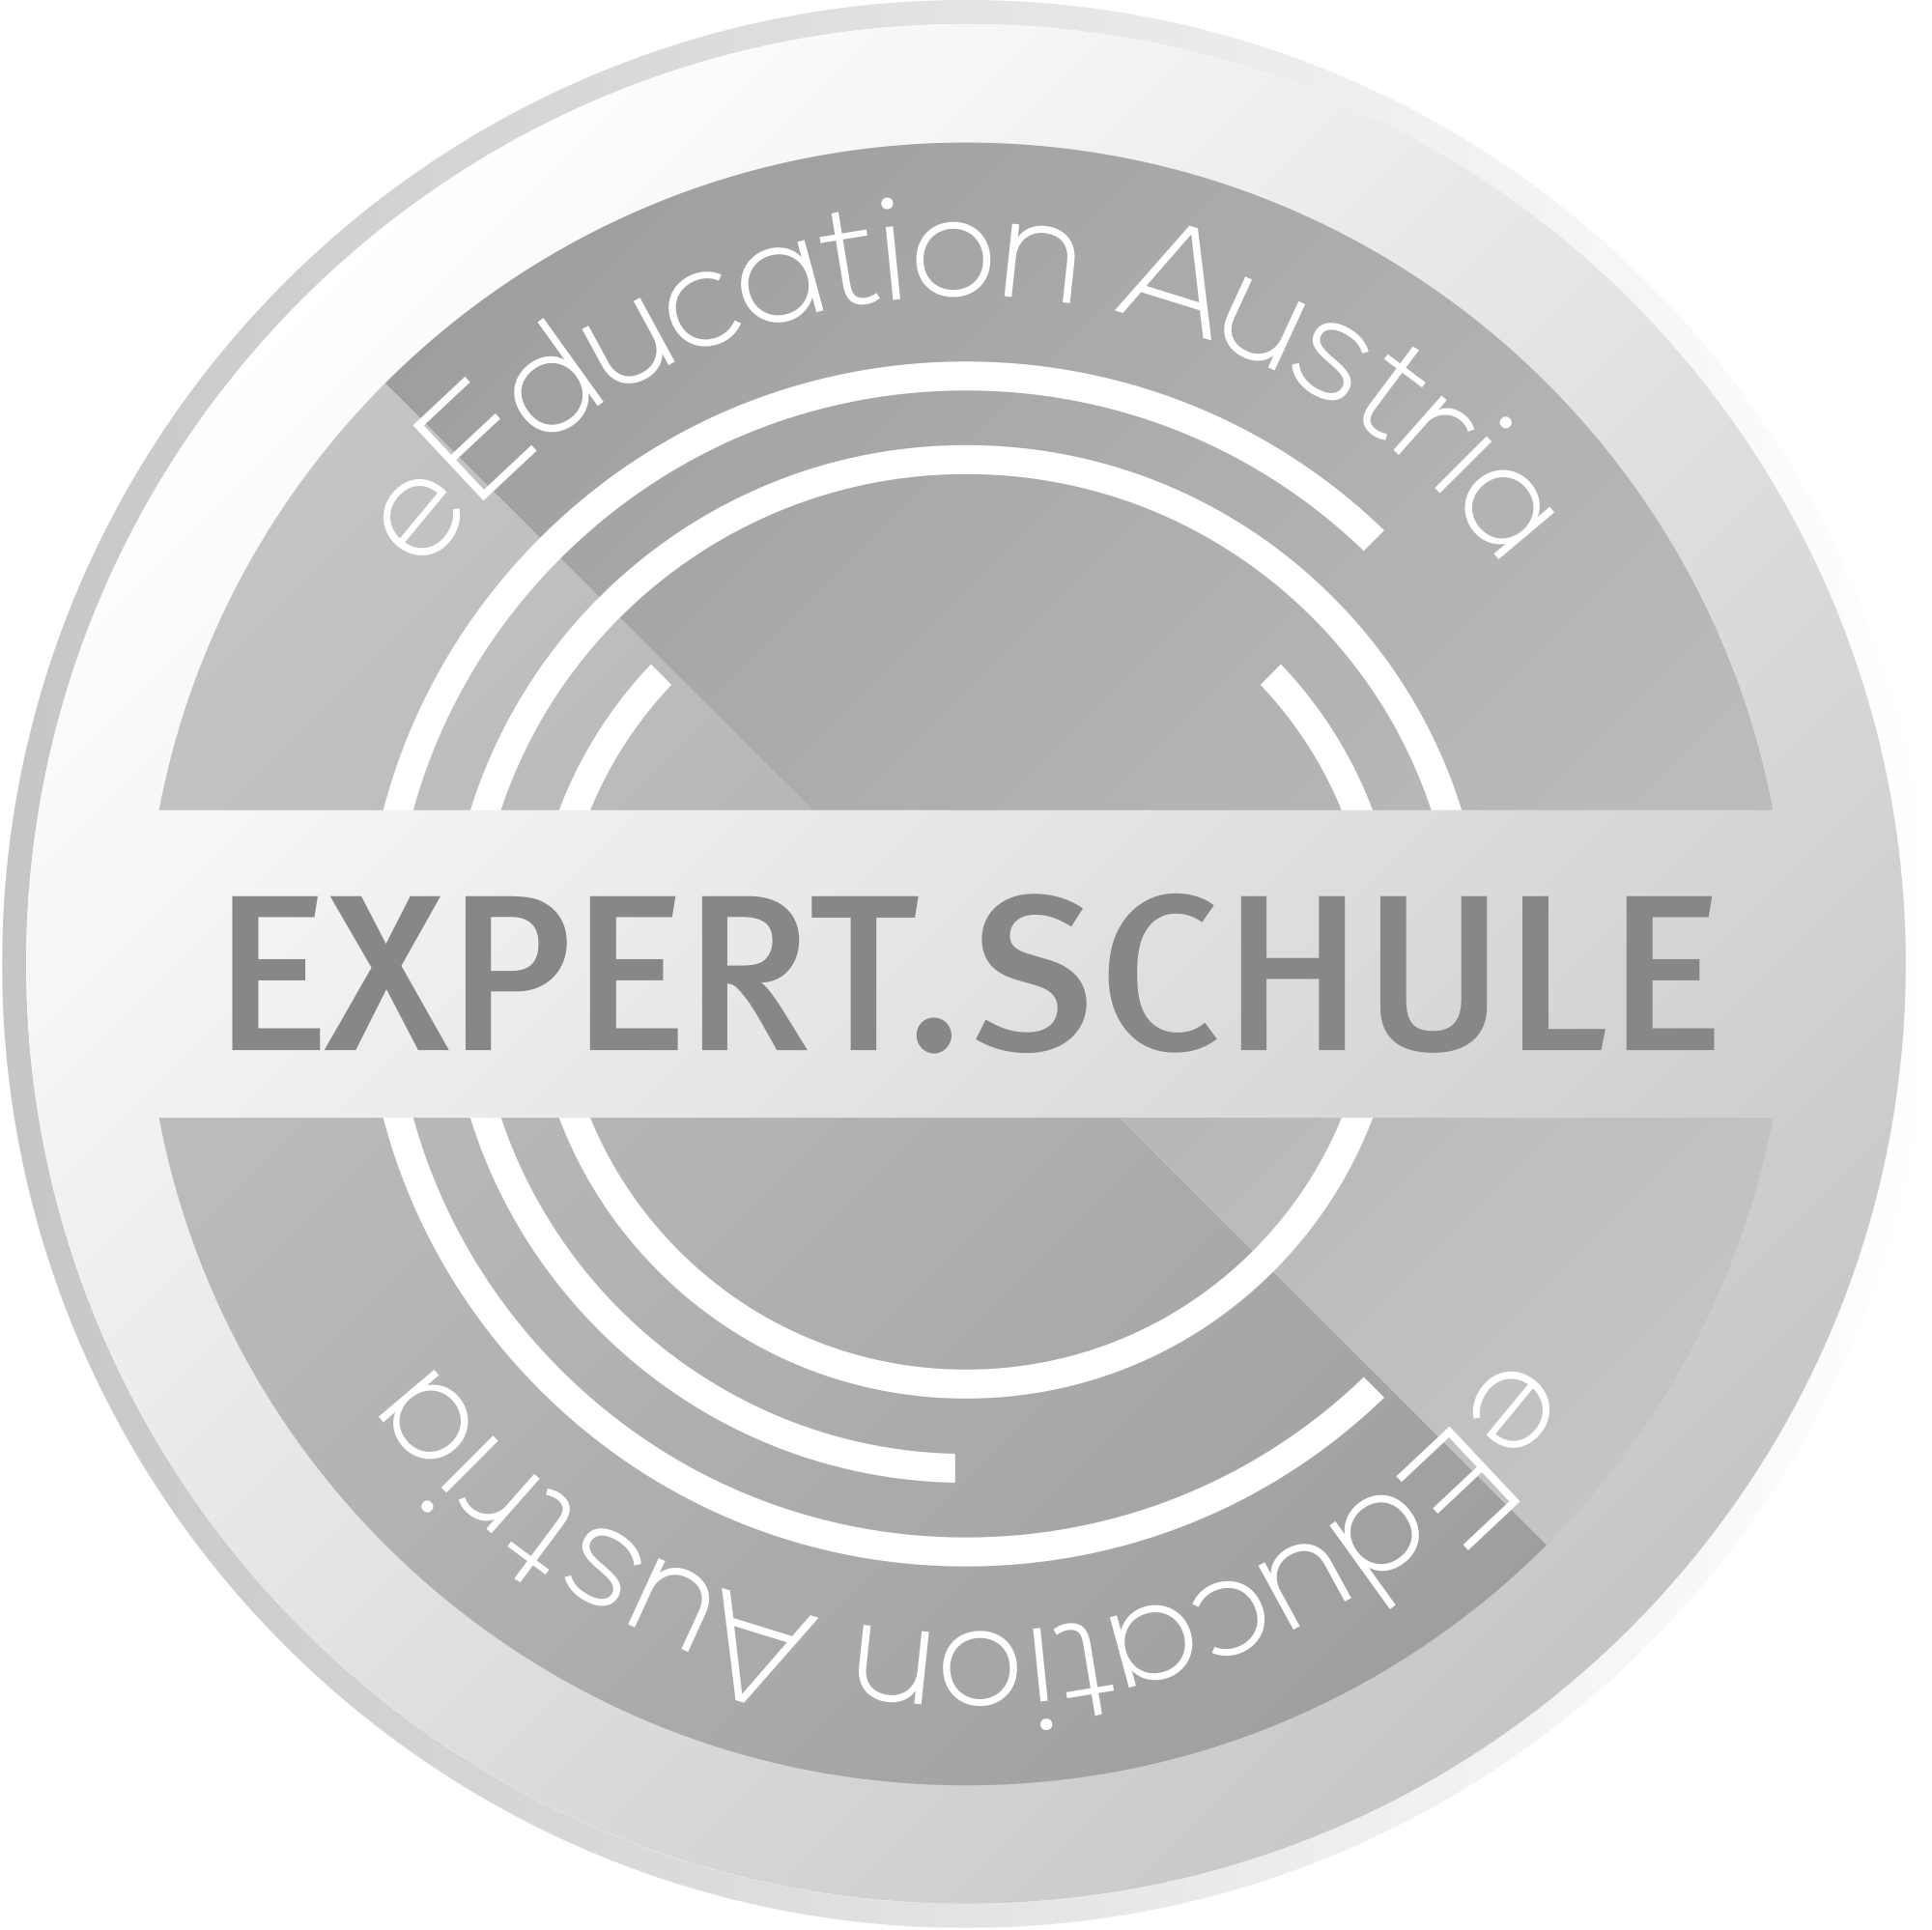 expert.schule logo